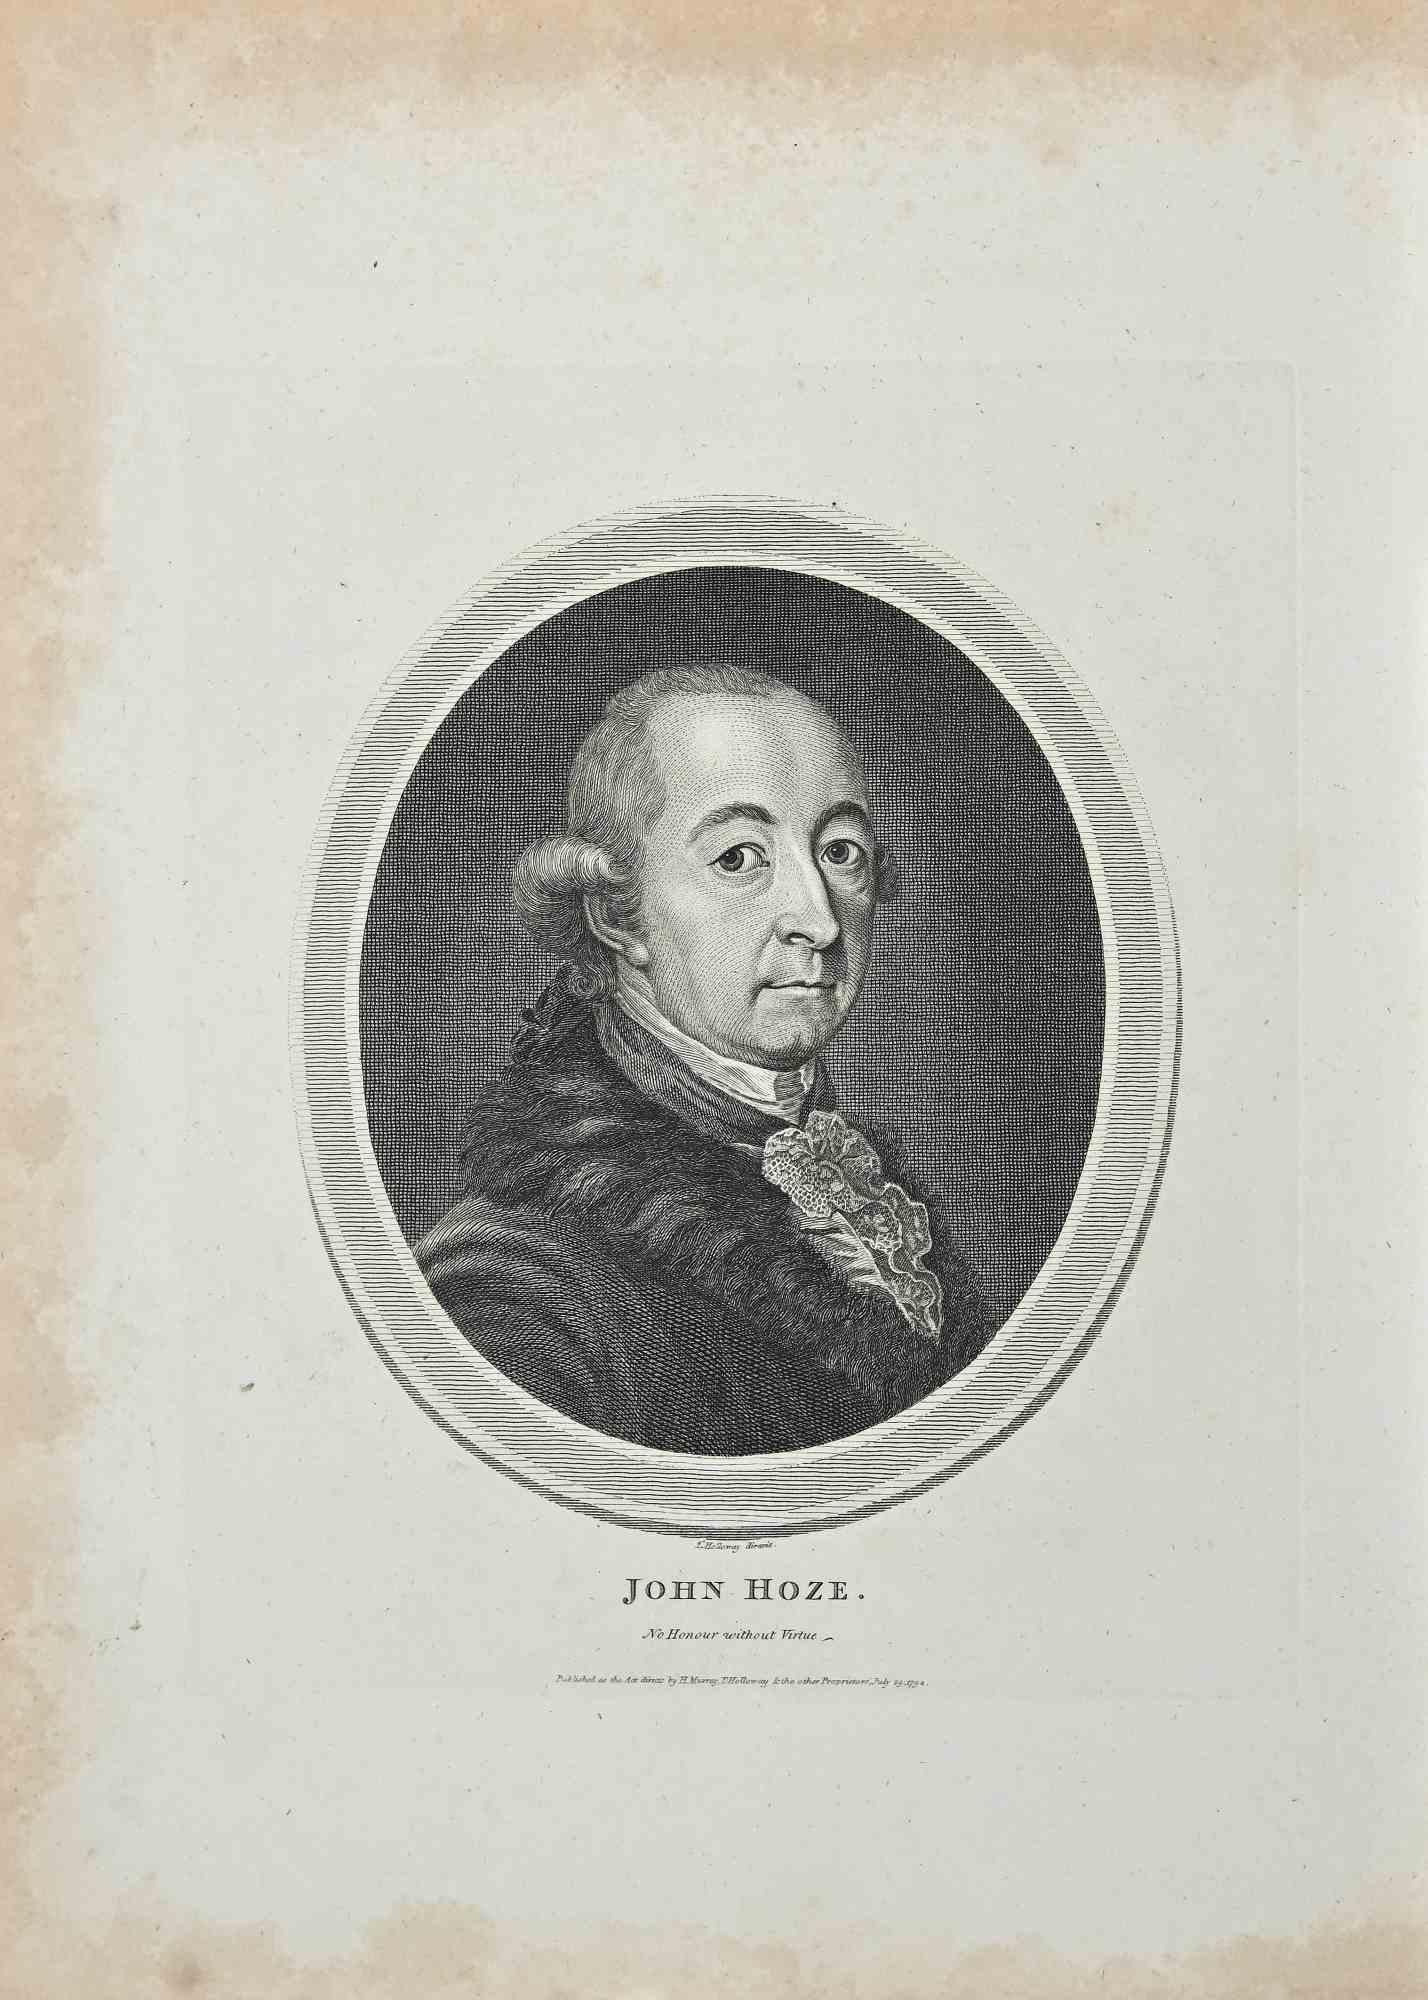 Portrait de John Hoze est une gravure originale réalisée par Thomas Holloway pour les "Essais sur la physiognomonie, destinés à promouvoir la connaissance et l'amour de l'humanité" de Johann Caspar Lavater, Londres, Bensley, 1810. 

Signé sur la